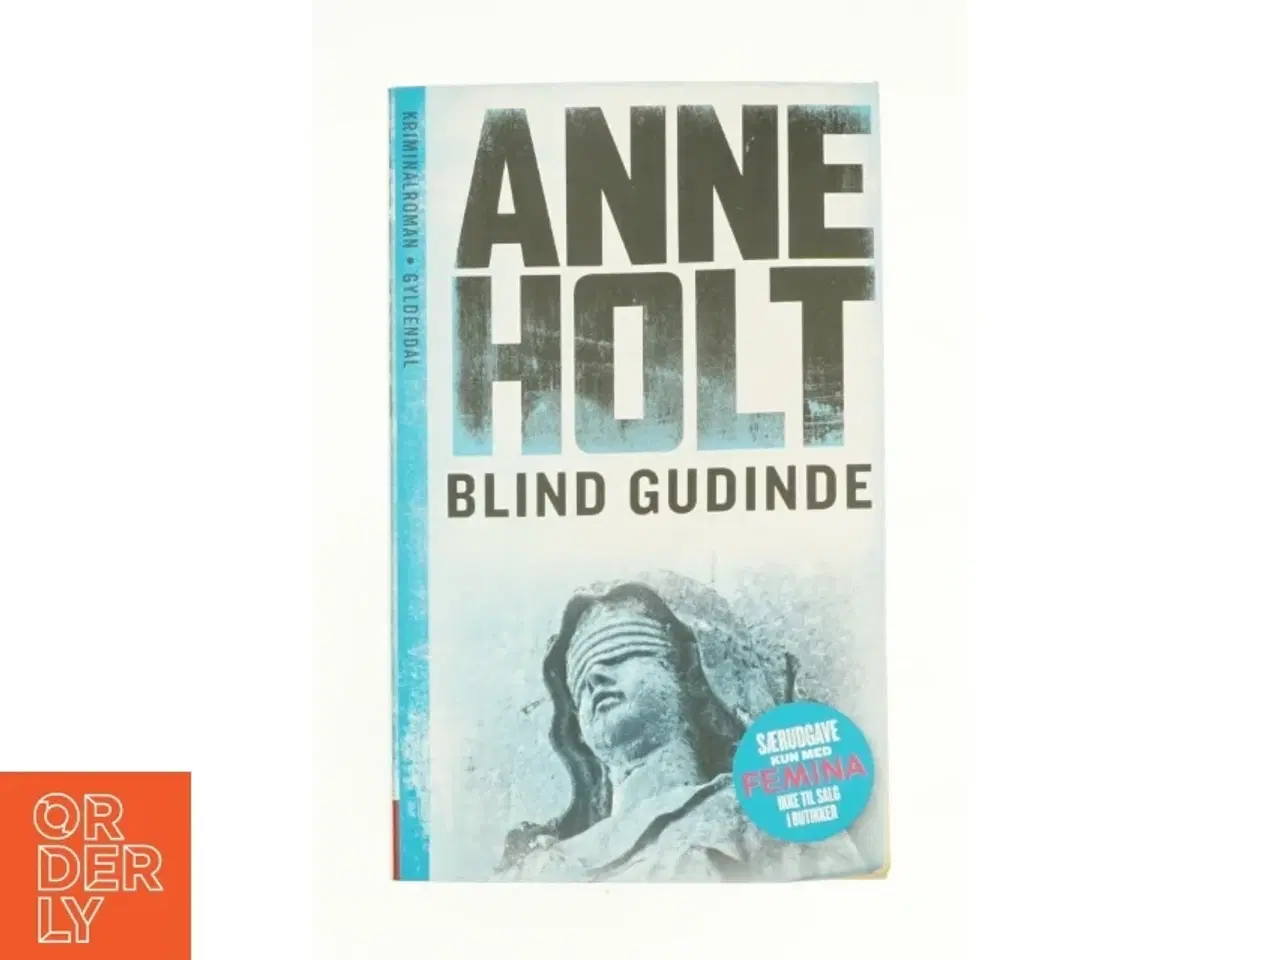 Billede 1 - Blind gudinde af Anne Holt (Bog)